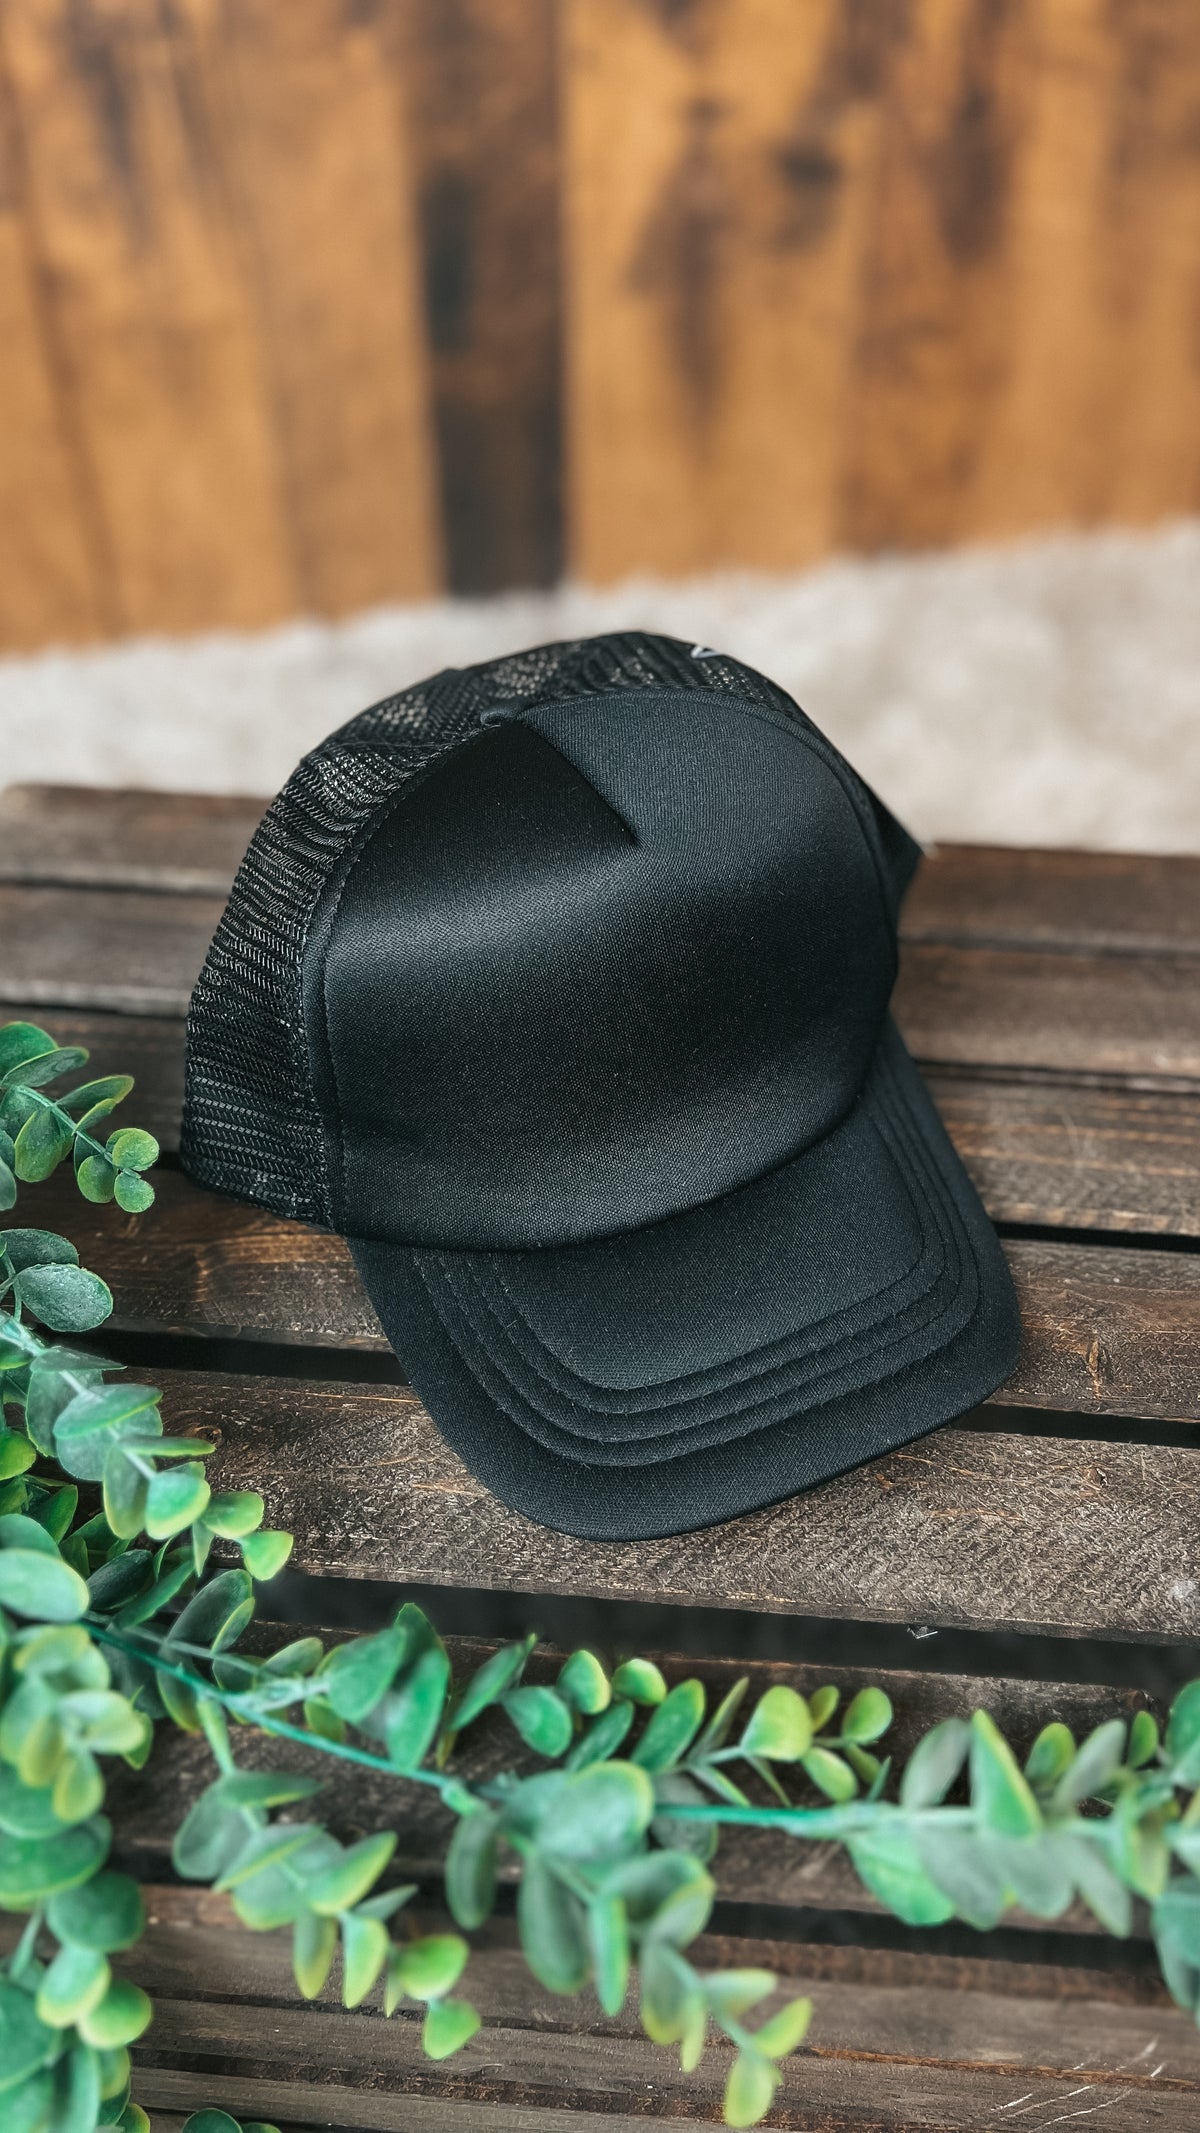 Black mesh back trucker style baseball hat